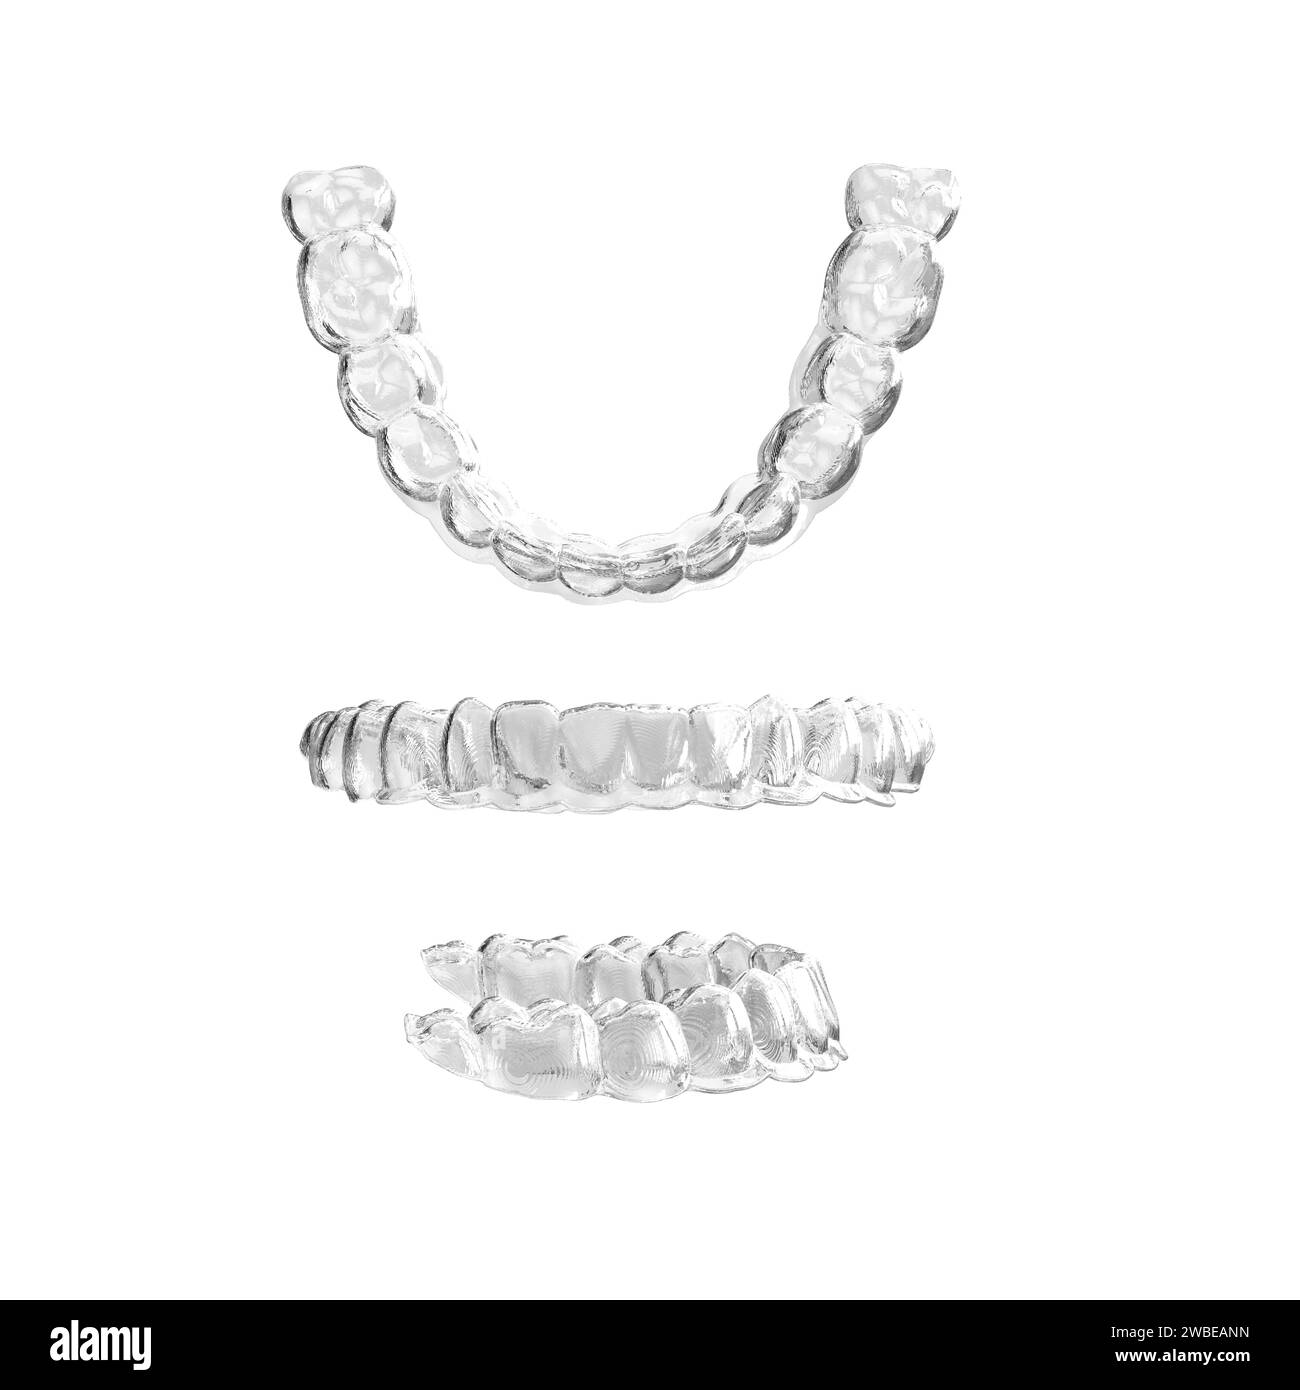 Un aligneur en plastique transparent invisible pour les dents supérieures, mettant en valeur son design élégant et sa transparence Banque D'Images